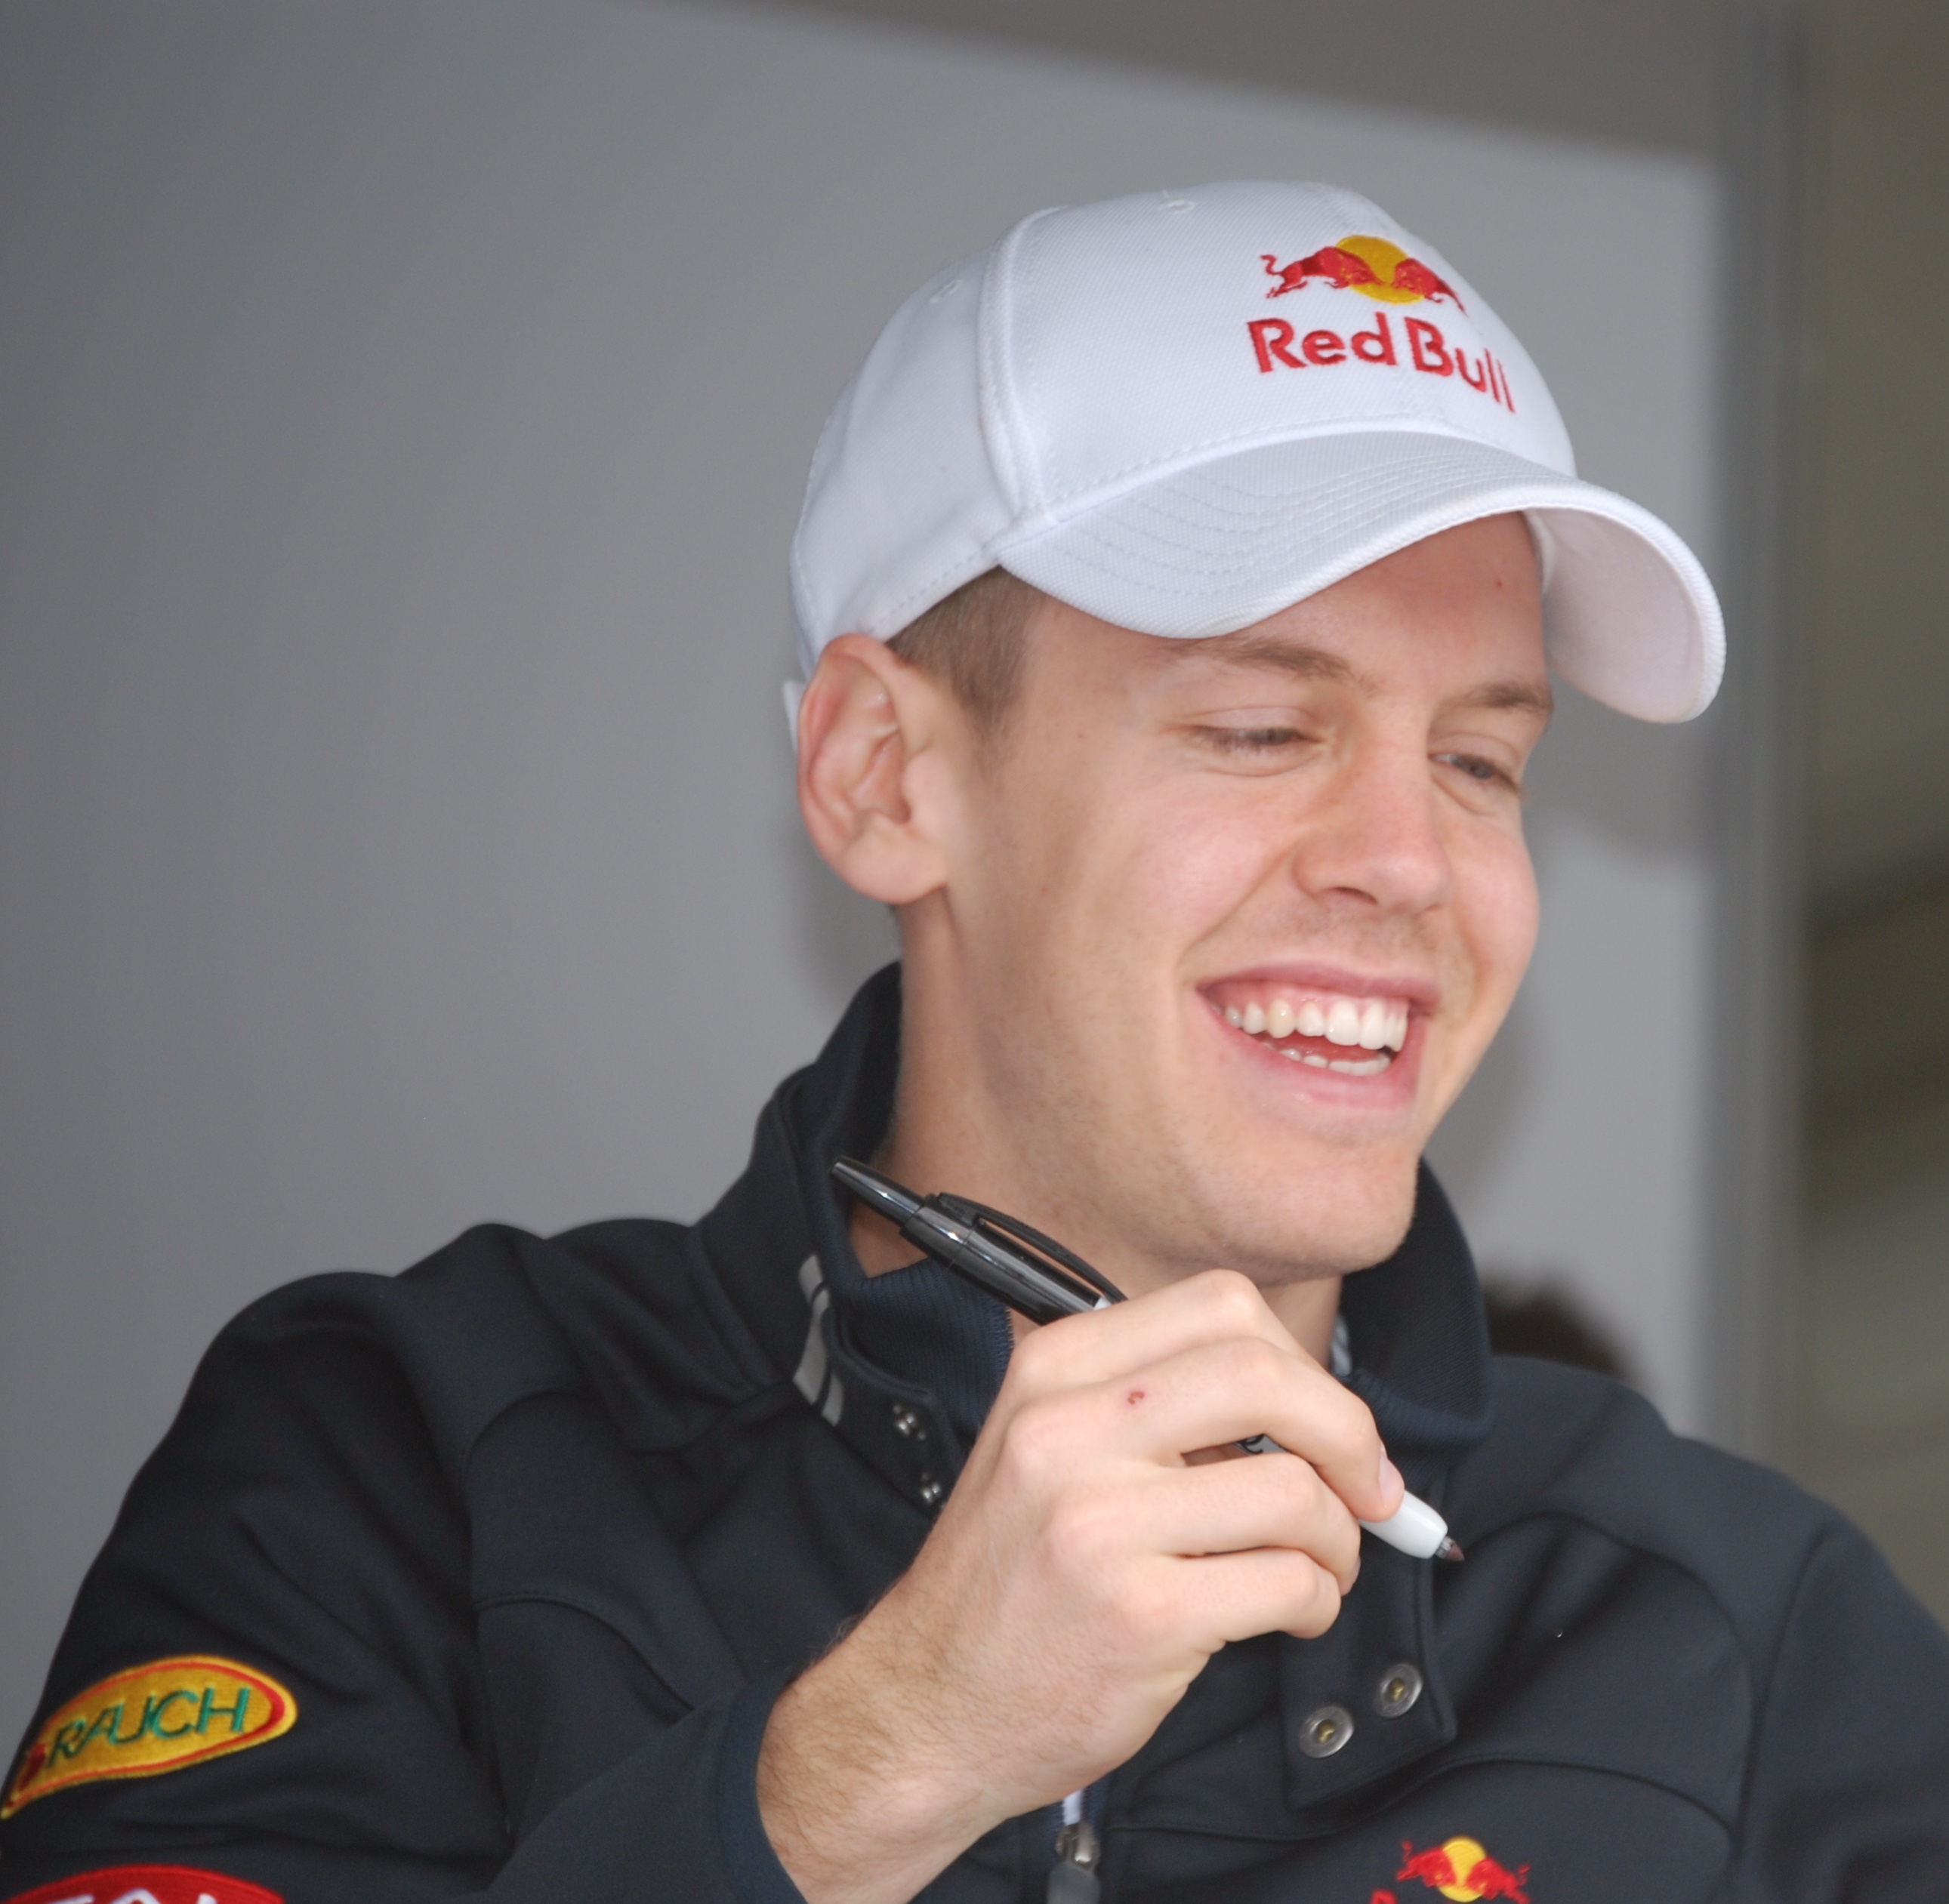 http://upload.wikimedia.org/wikipedia/commons/6/6d/Sebastian_Vettel_2009_Australia.jpg